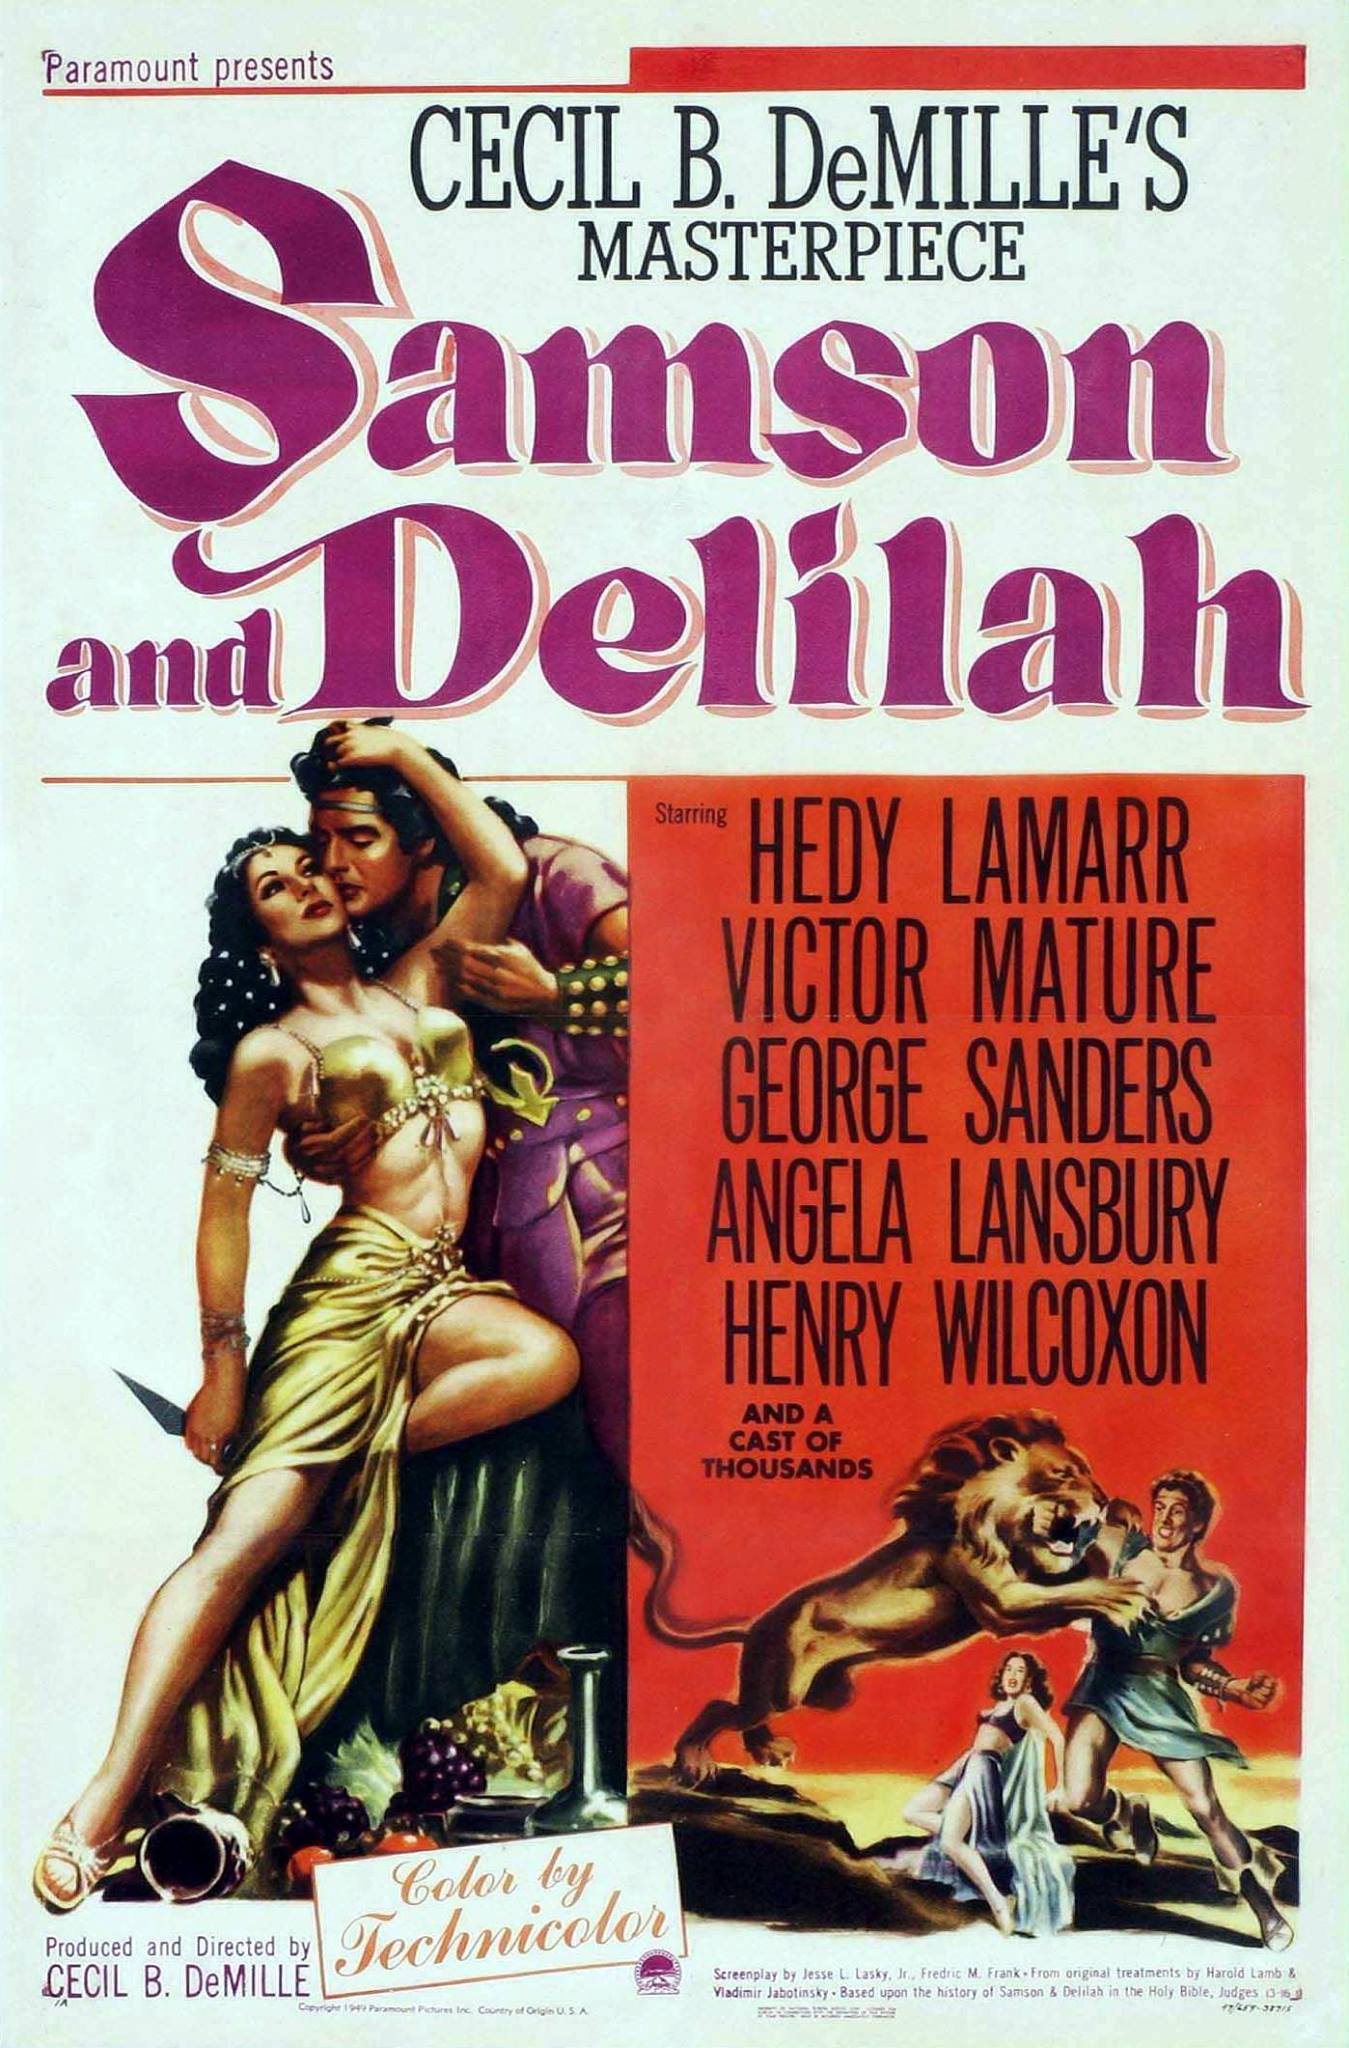 Samson & Delila's